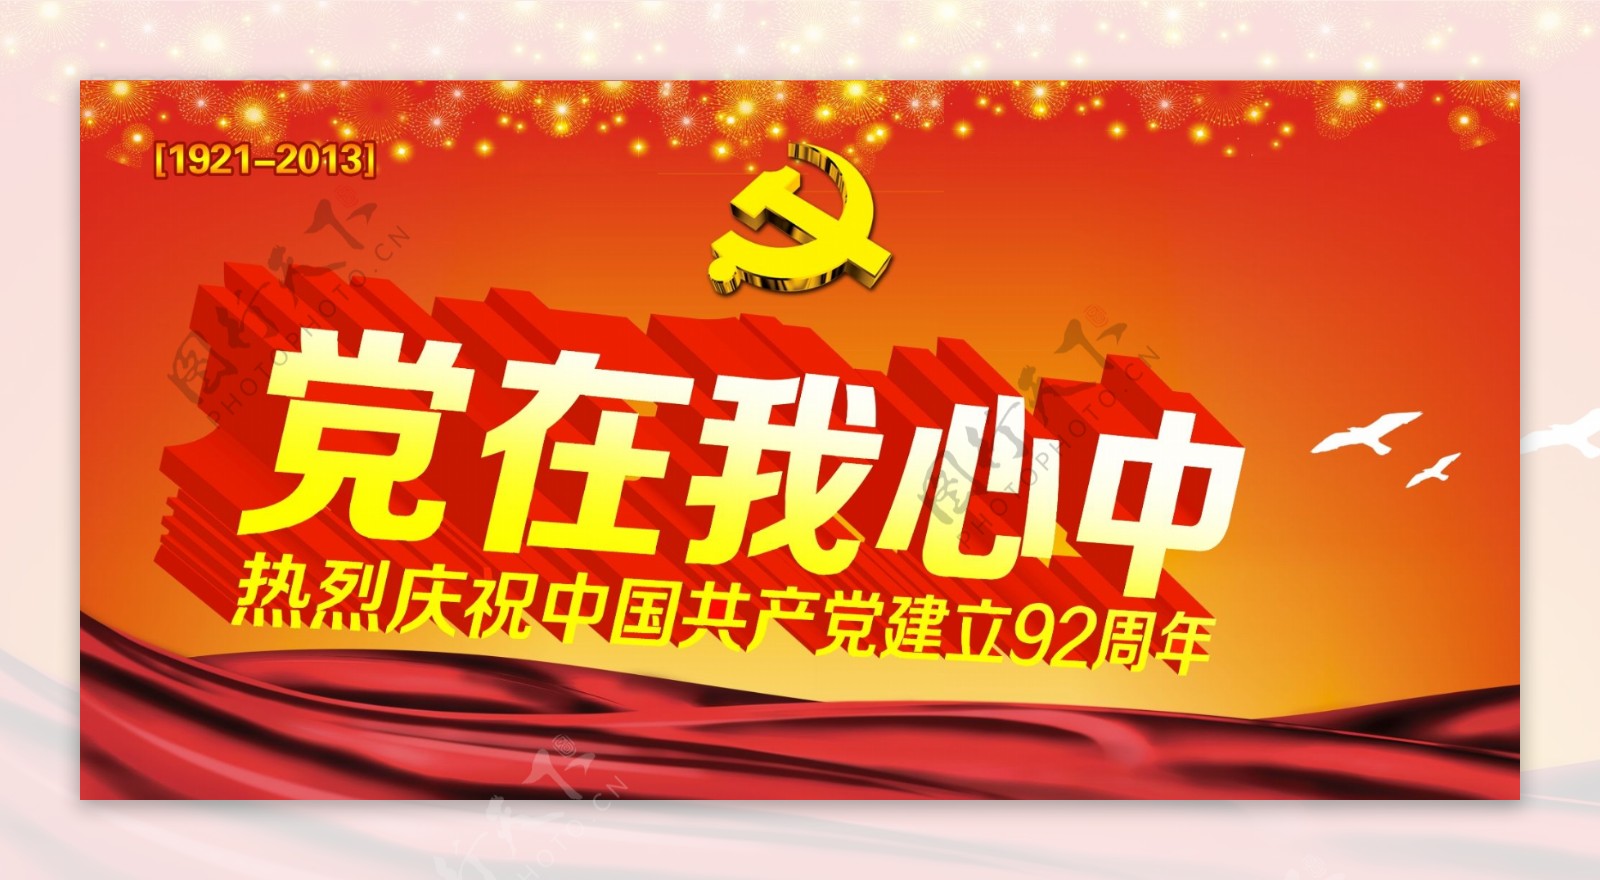 中国共产党建立92周年模板PSD素材